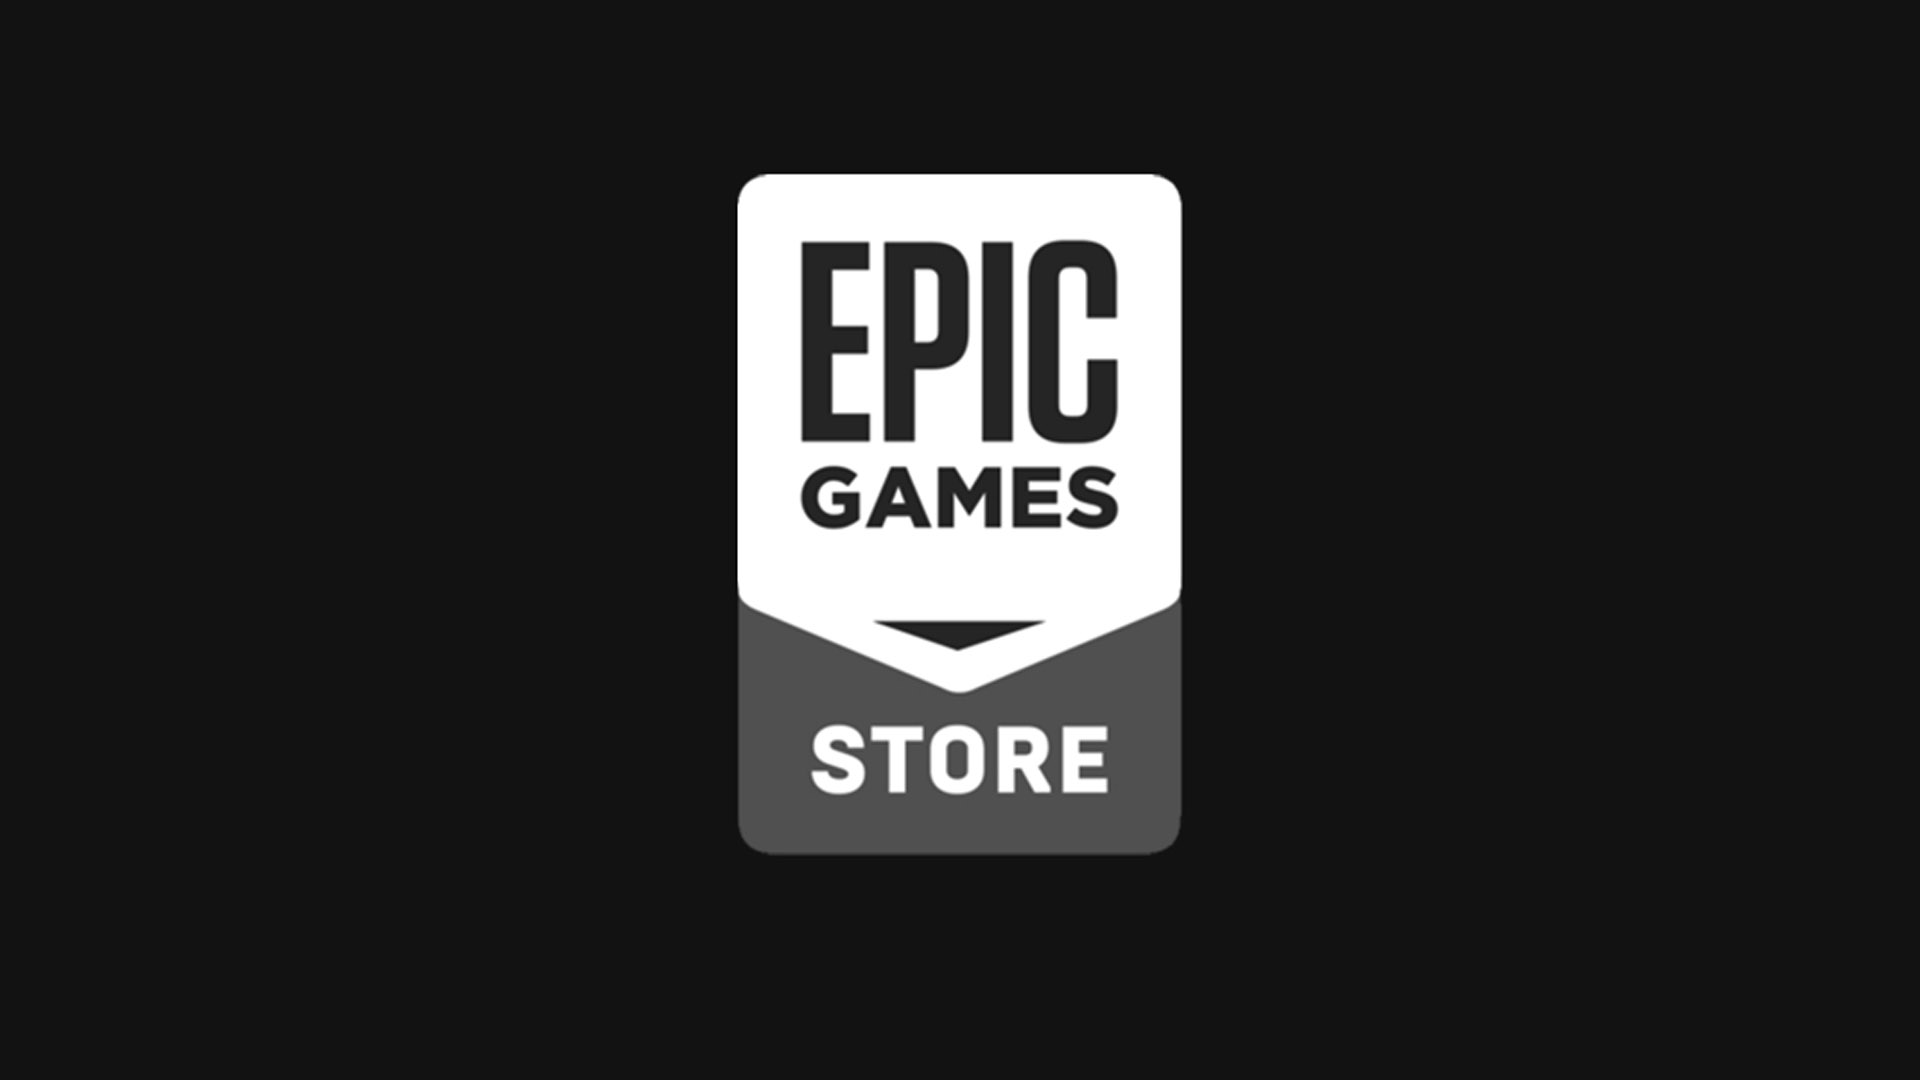 بازی جدید استودیو Remedy روی فروشگاه اپیک گیمز دیده شده است